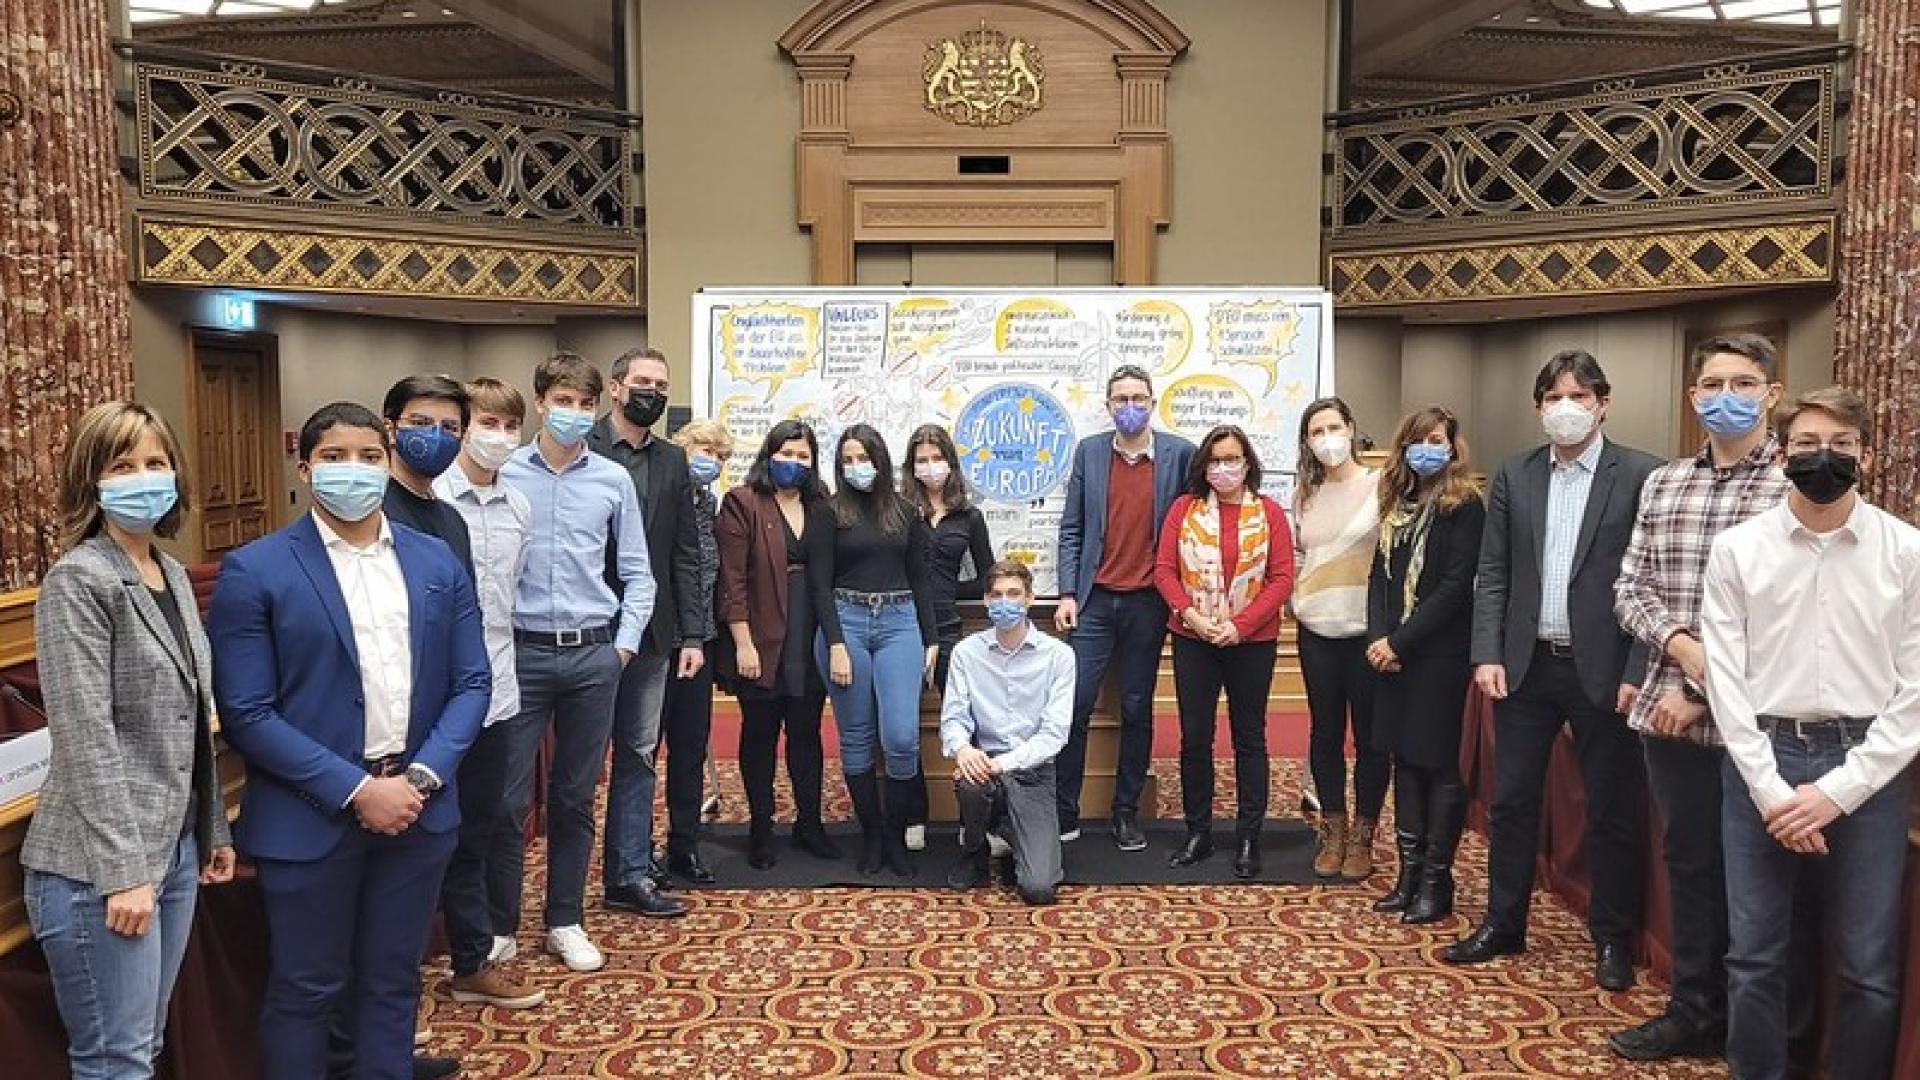 Photo de groupe prise lors des discussions entre députés et jeunes sur l'avenir de l'Union européenne